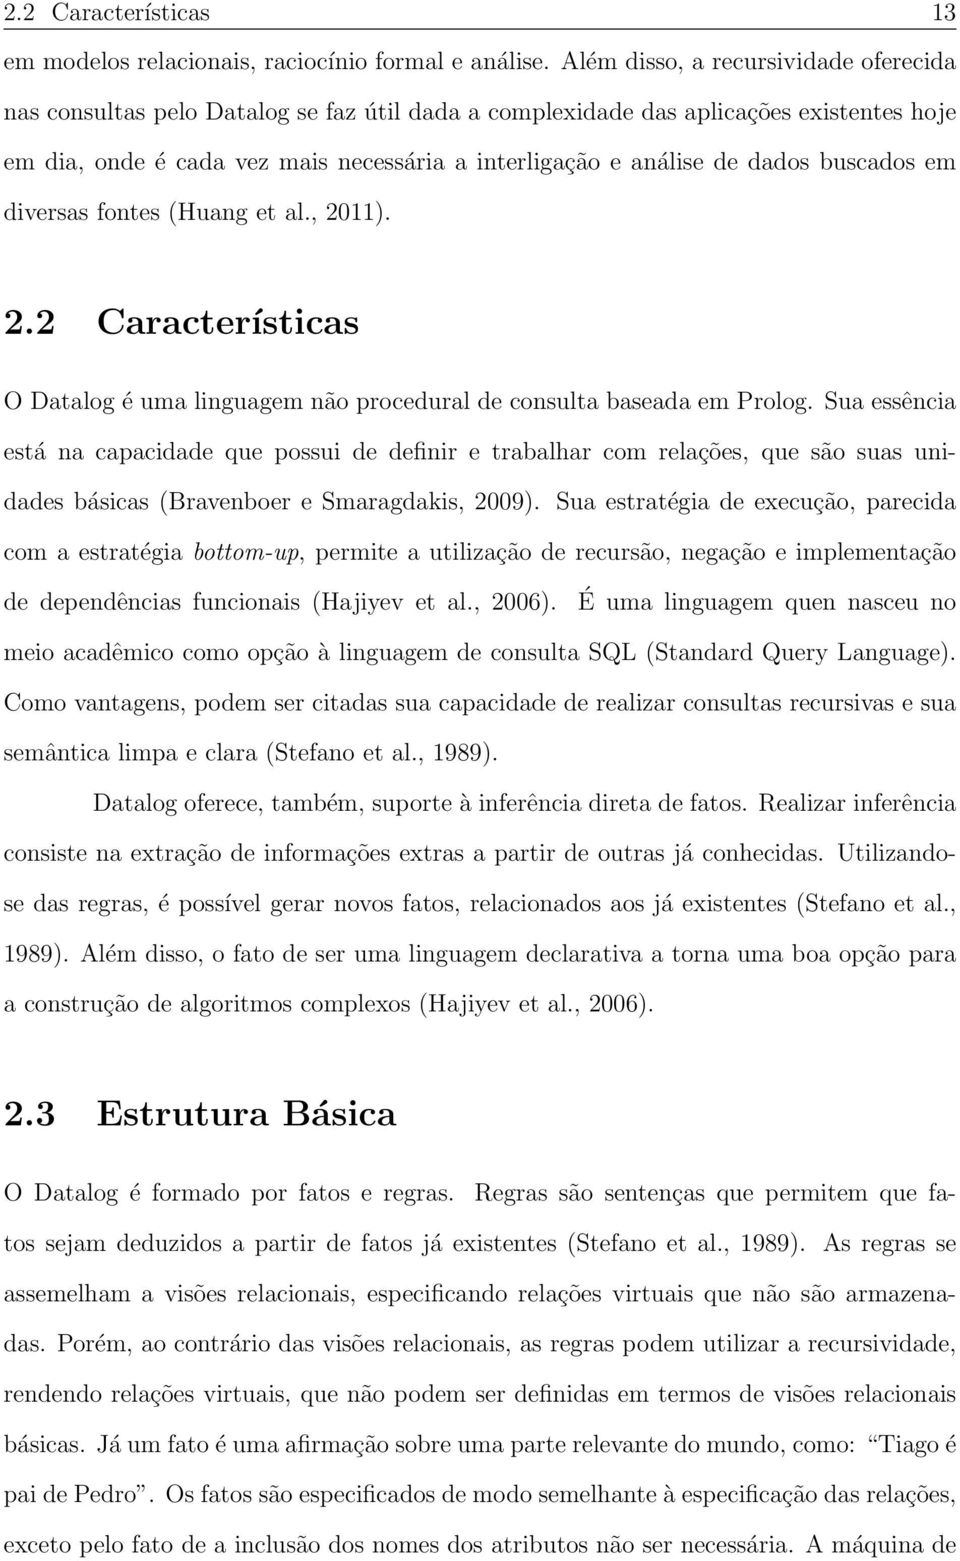 dados buscados em diversas fontes (Huang et al., 2011). 2.2 Características O Datalog é uma linguagem não procedural de consulta baseada em Prolog.